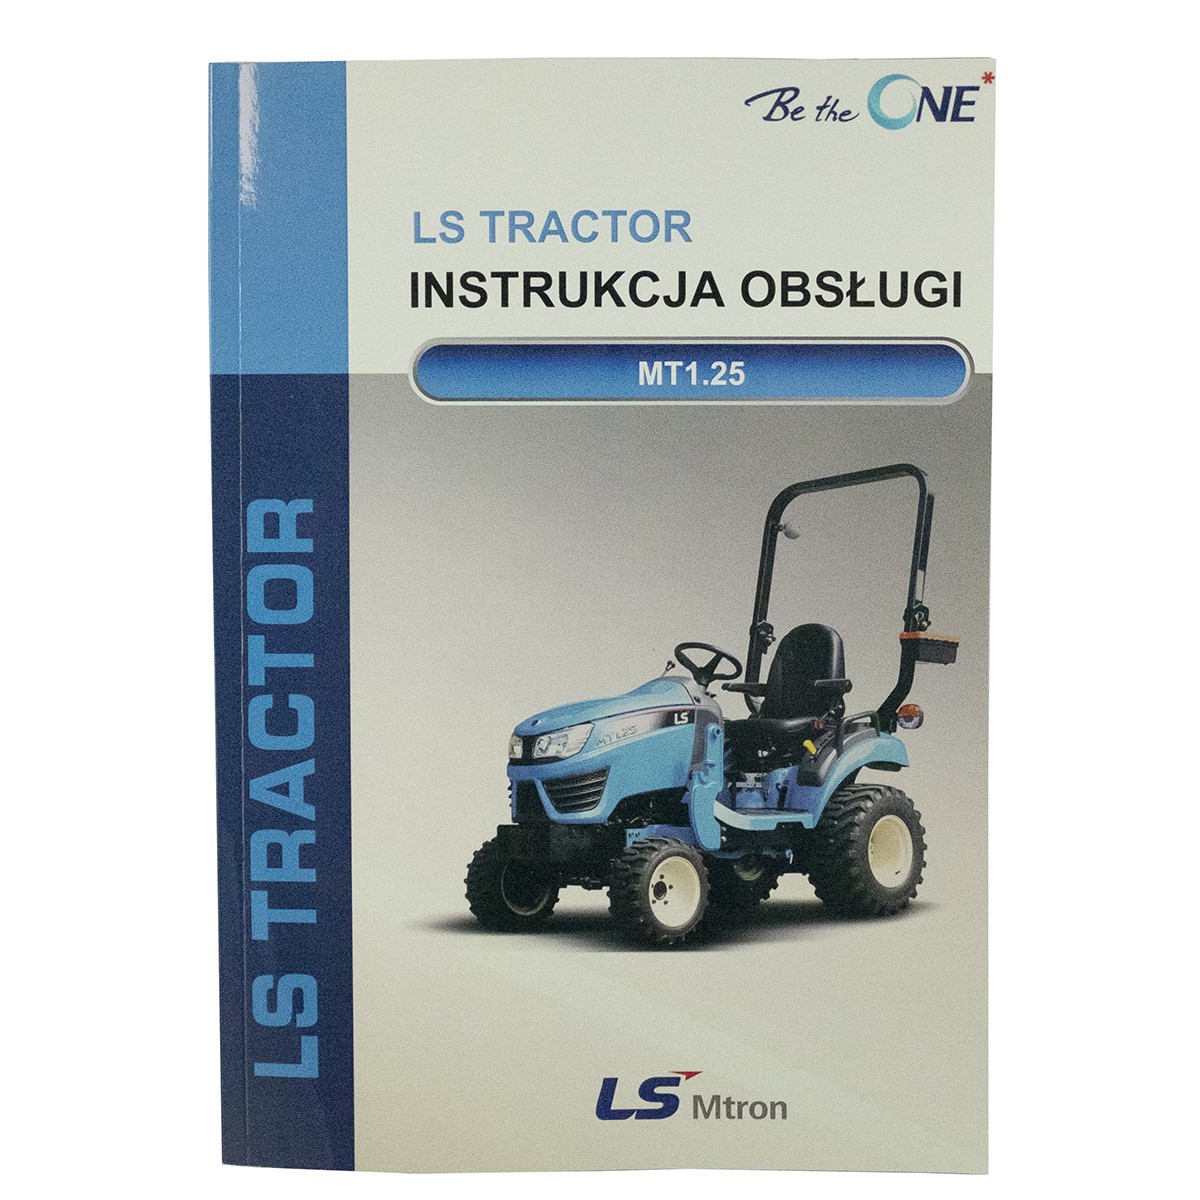 LS Tractor MT1.25 tractor manual